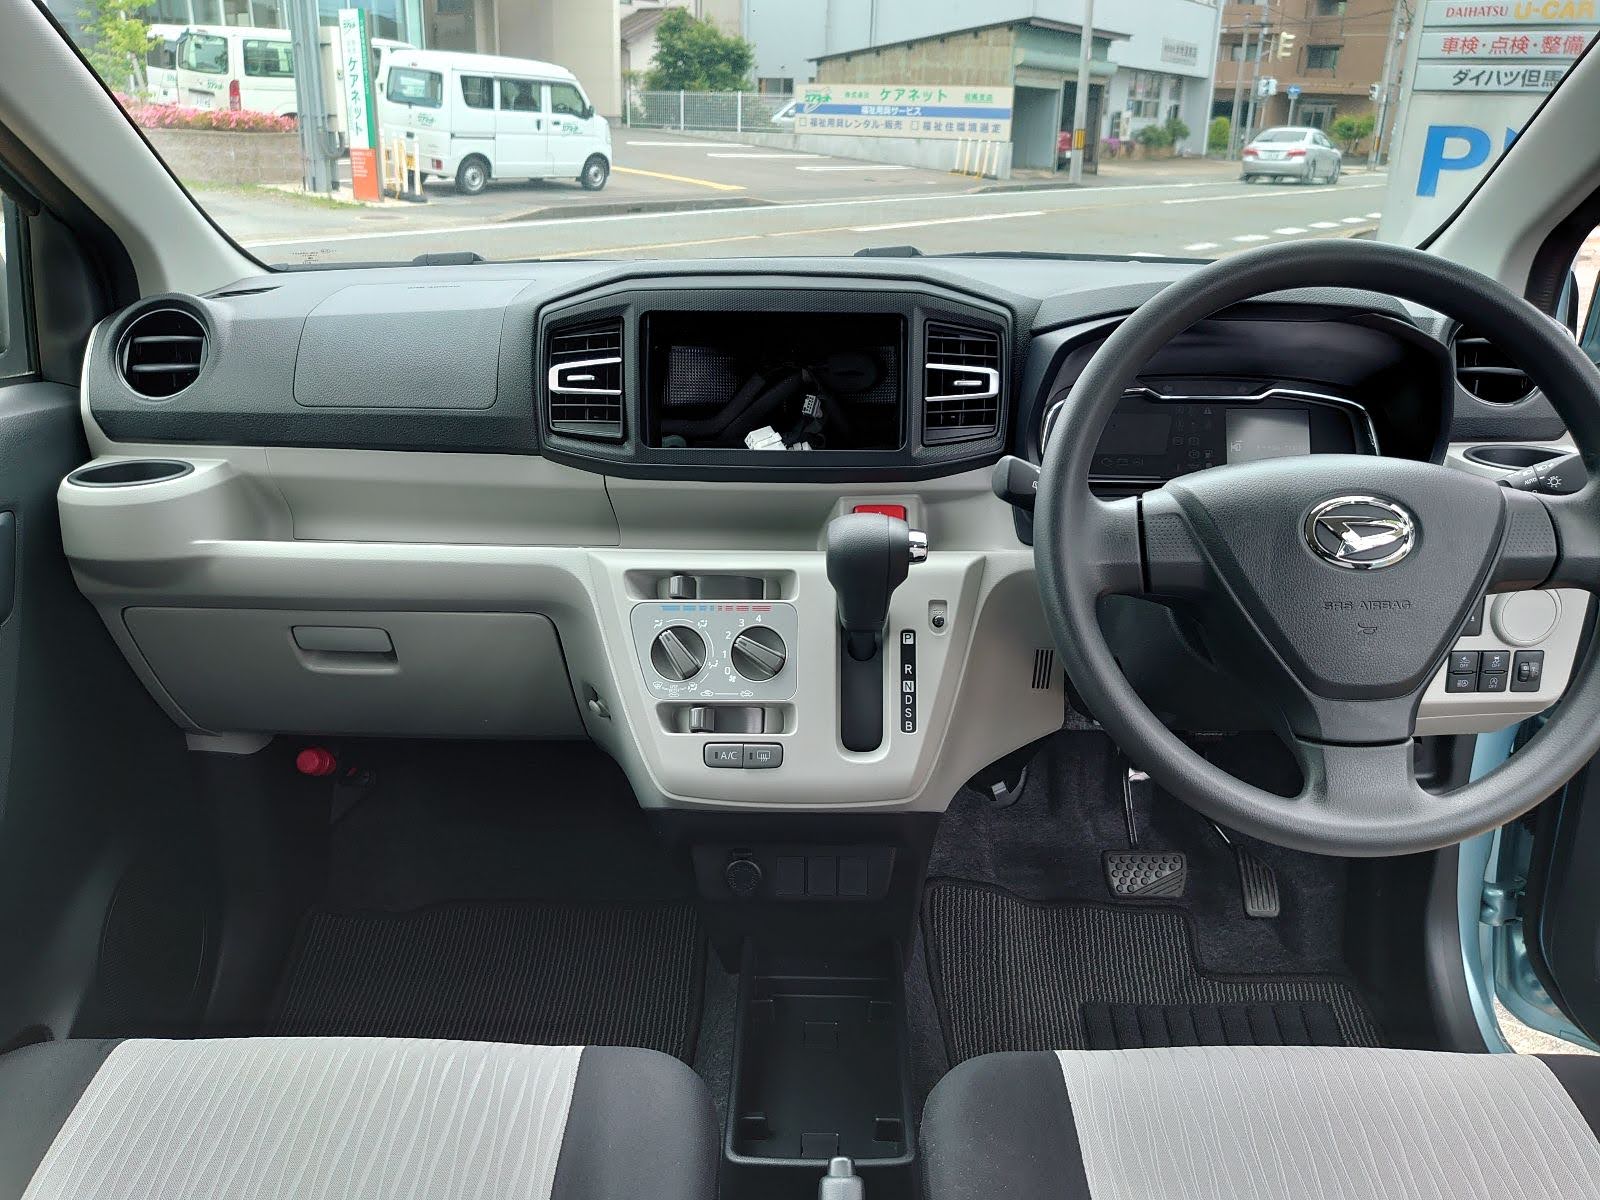 Daihatsu e:S steering wheel dash